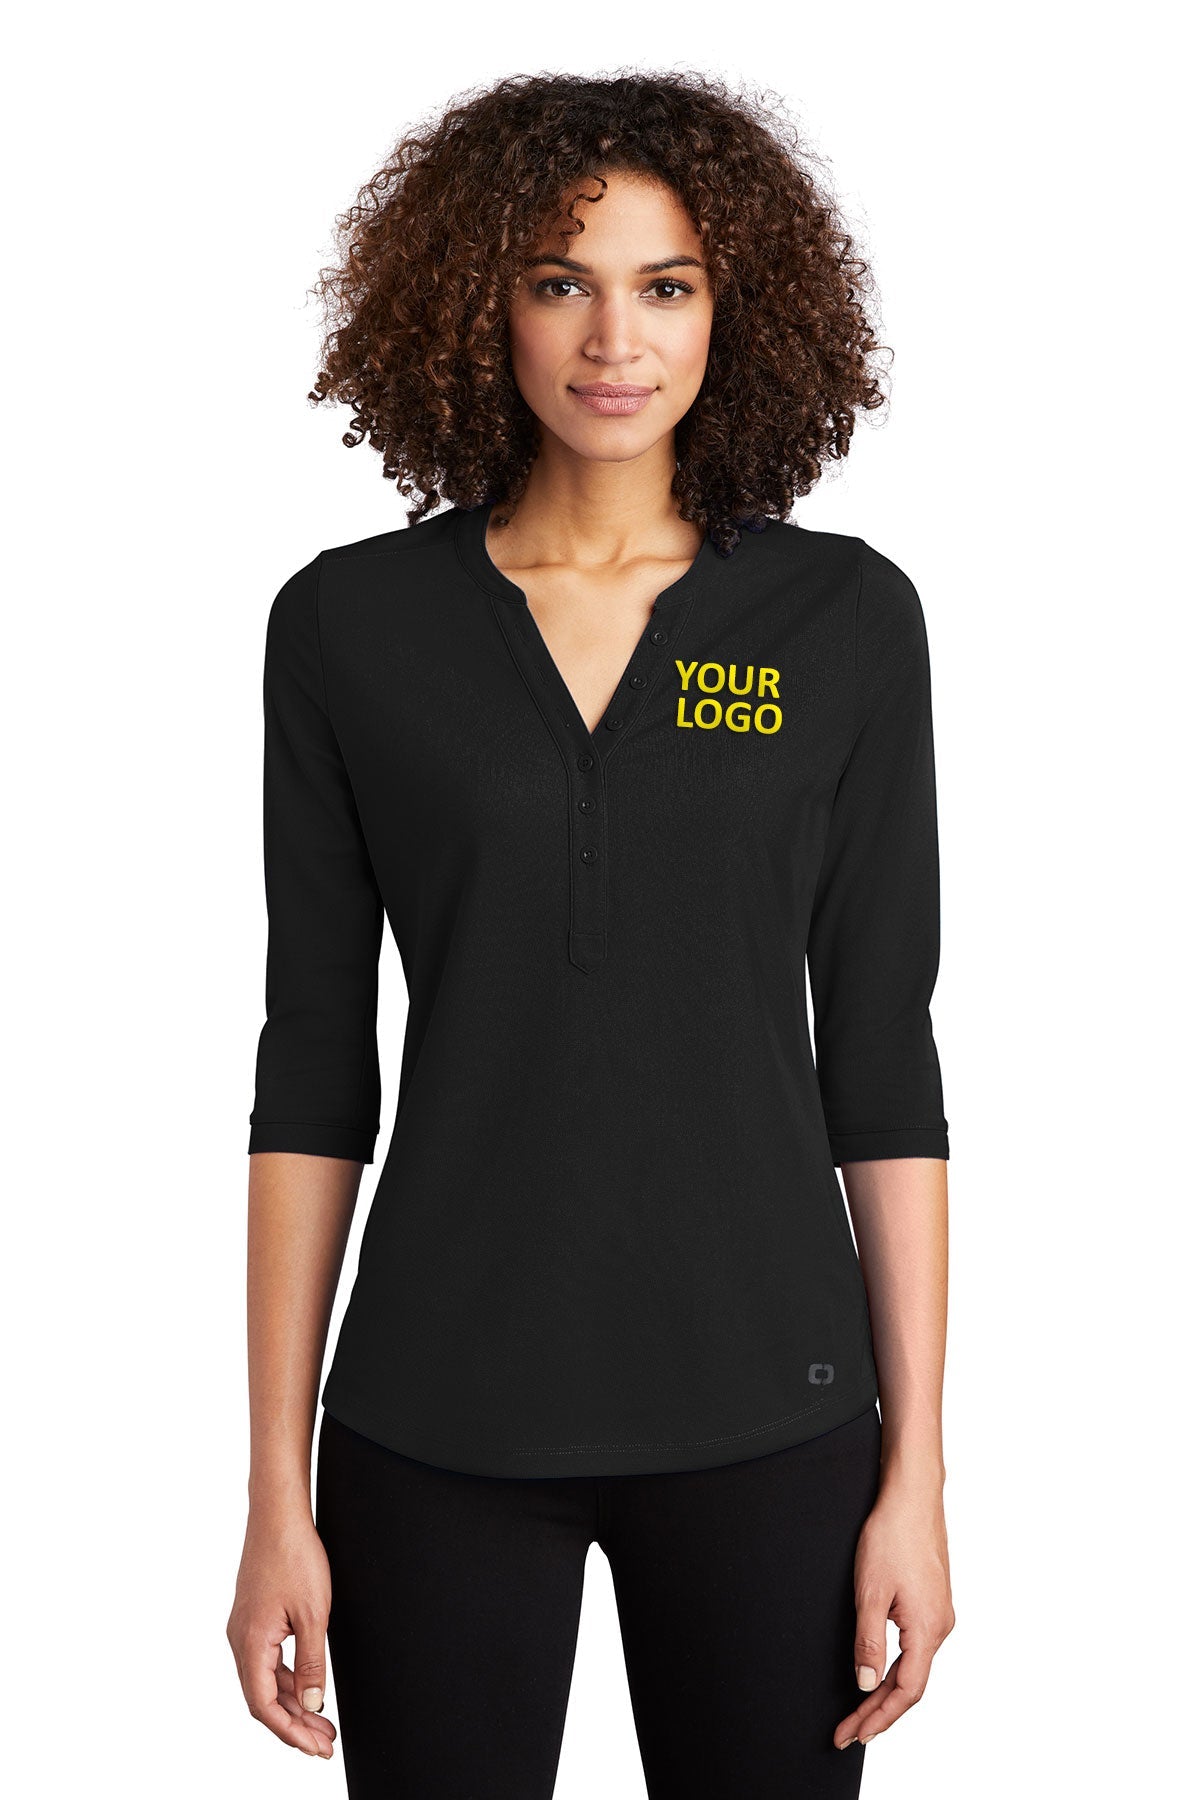 OGIO Blacktop LOG104 custom embroidered polo shirts